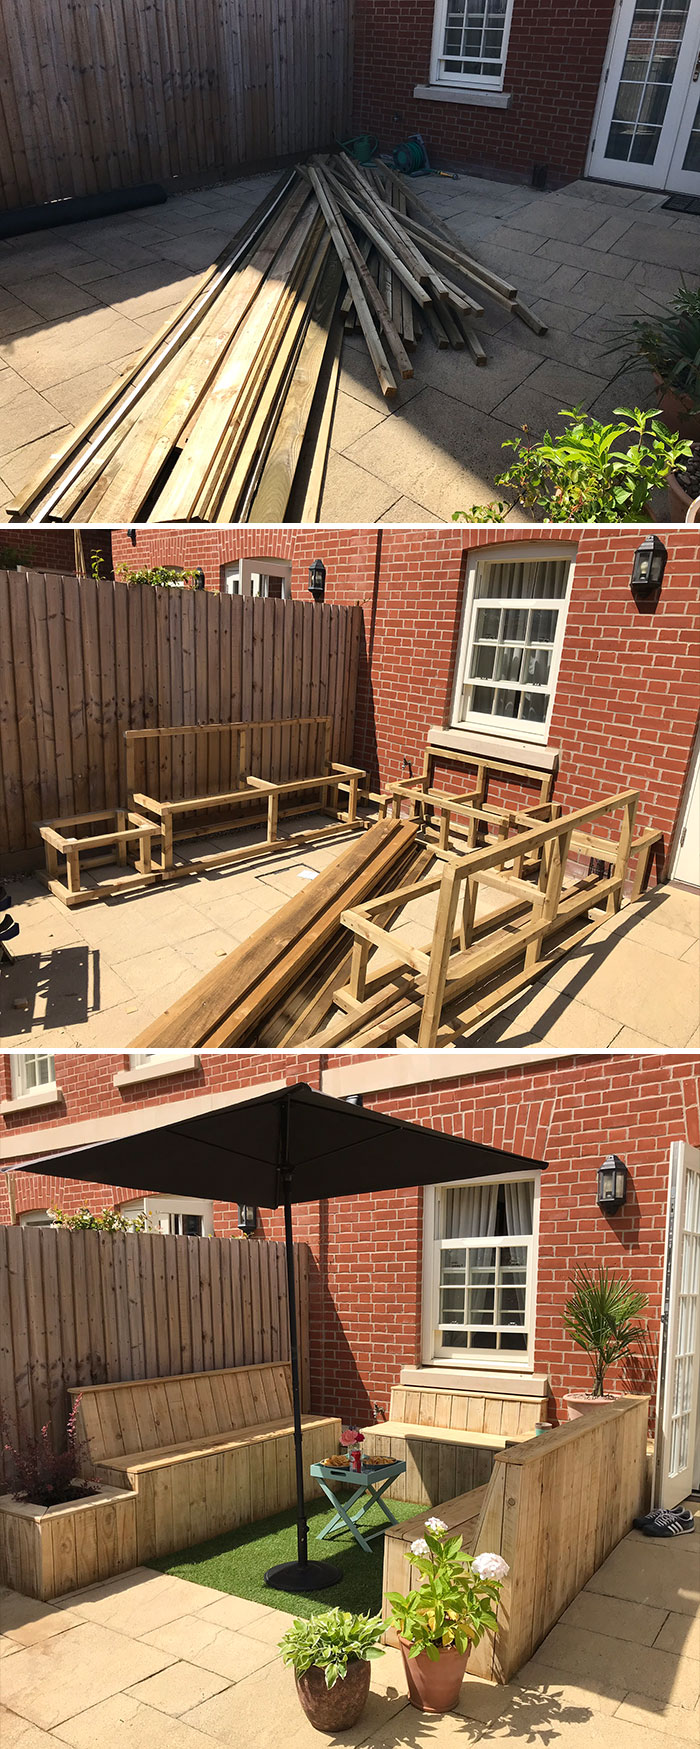 ¡Así es! ¡Es otro proyecto de patio en la cuarentena! Construí un conjunto de bancas para nuestro pequeño patio